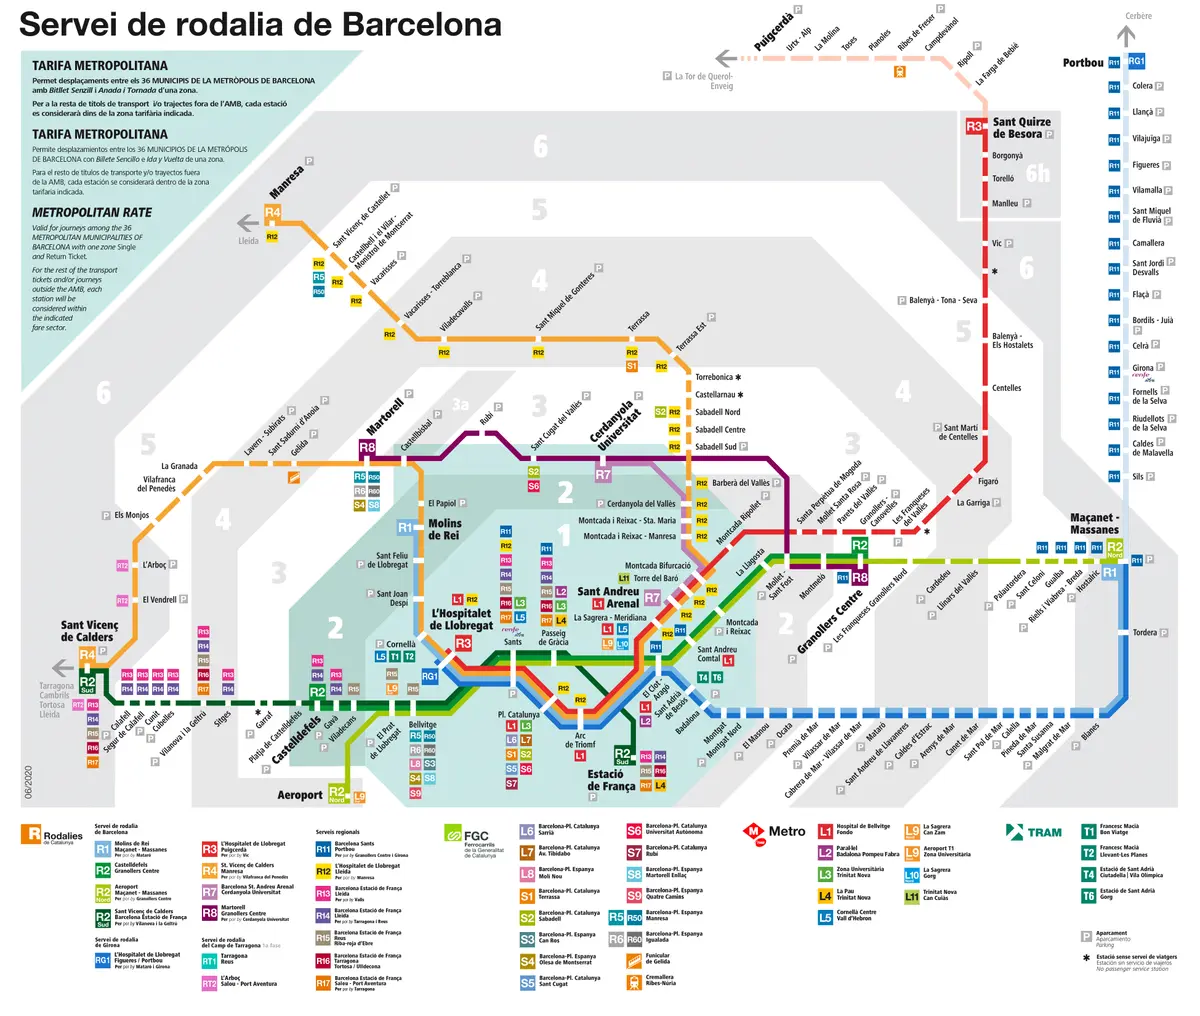 precio tren barcelona castelldefels - Qué tren se agarra para ir a Castelldefels